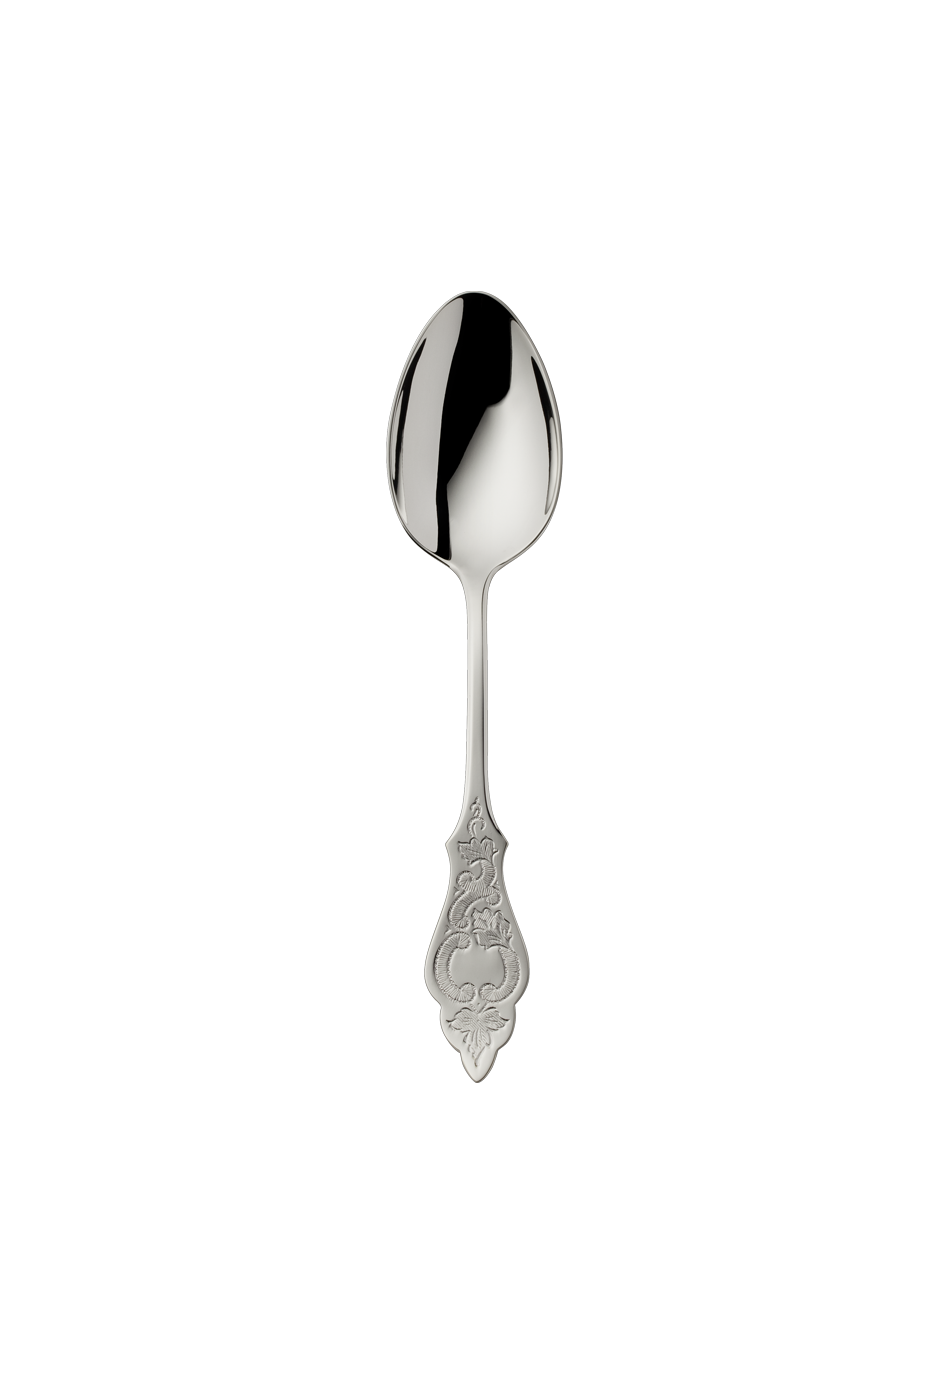 Ostfriesen Children's Spoon (150g massive silverplated)